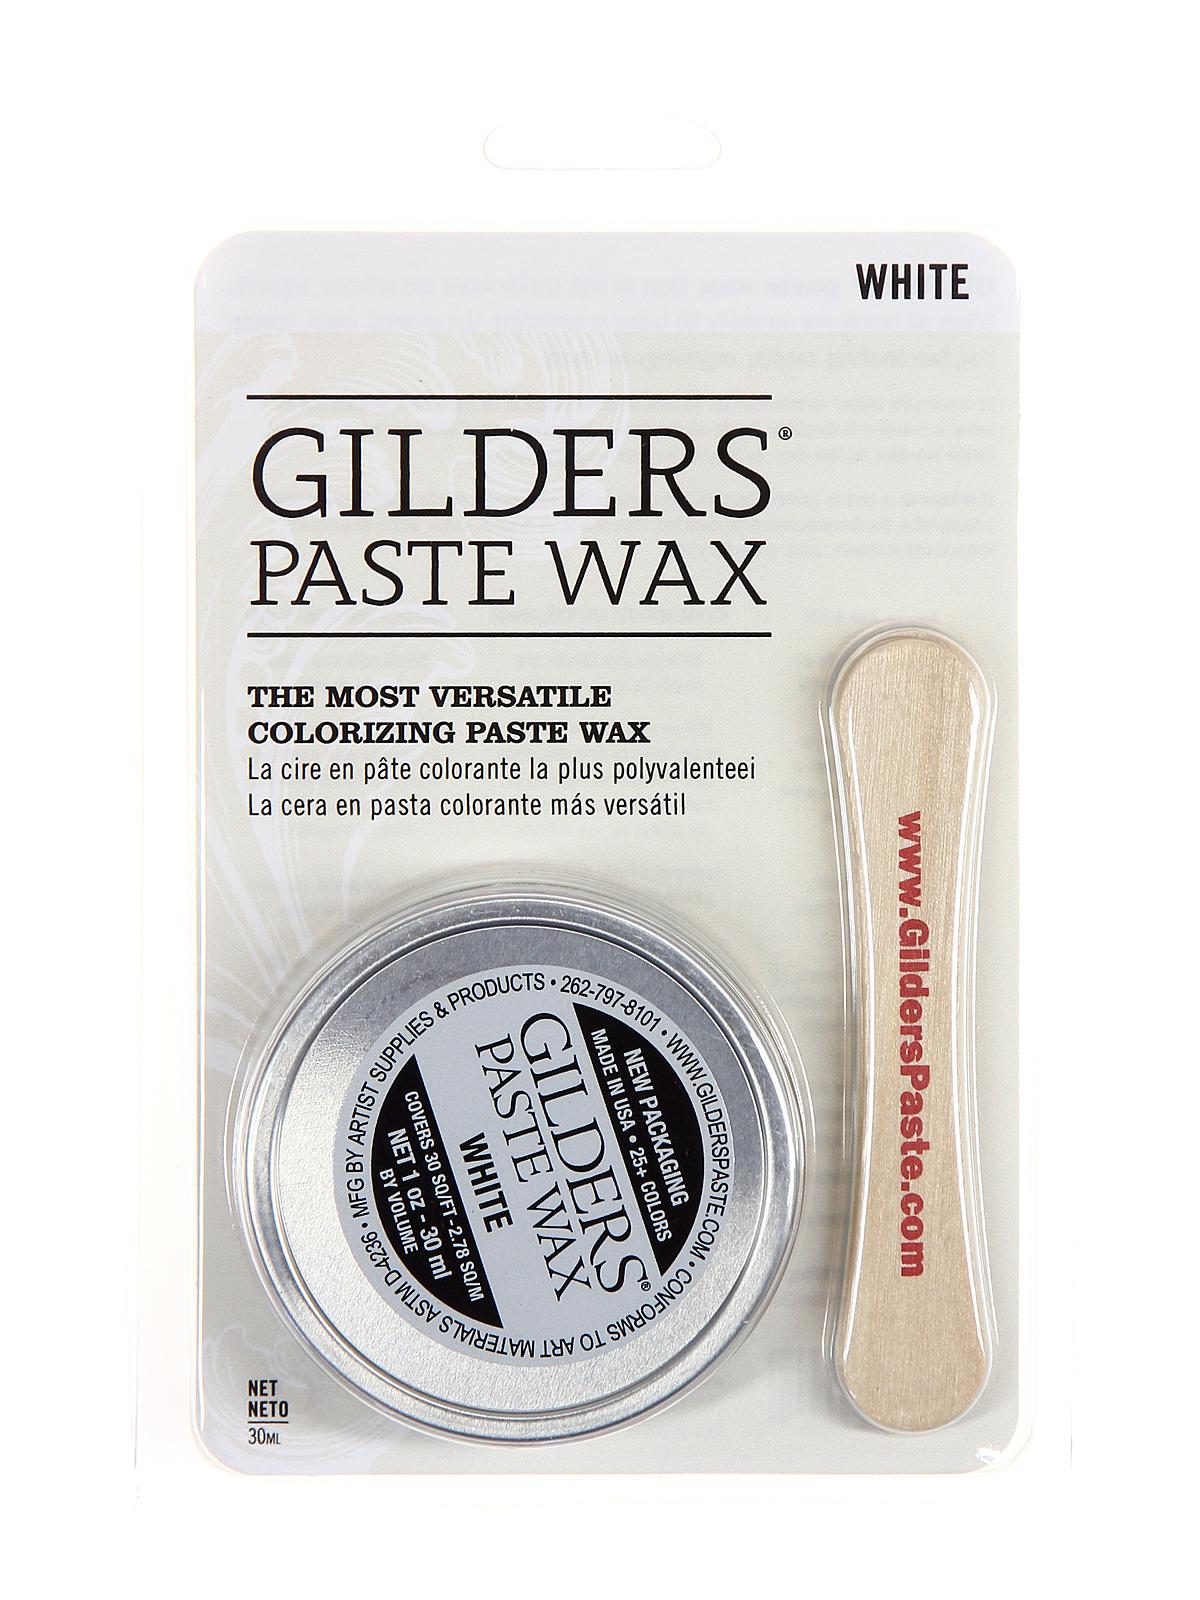 Gilder's Paste Wax White 1 Oz. Tin